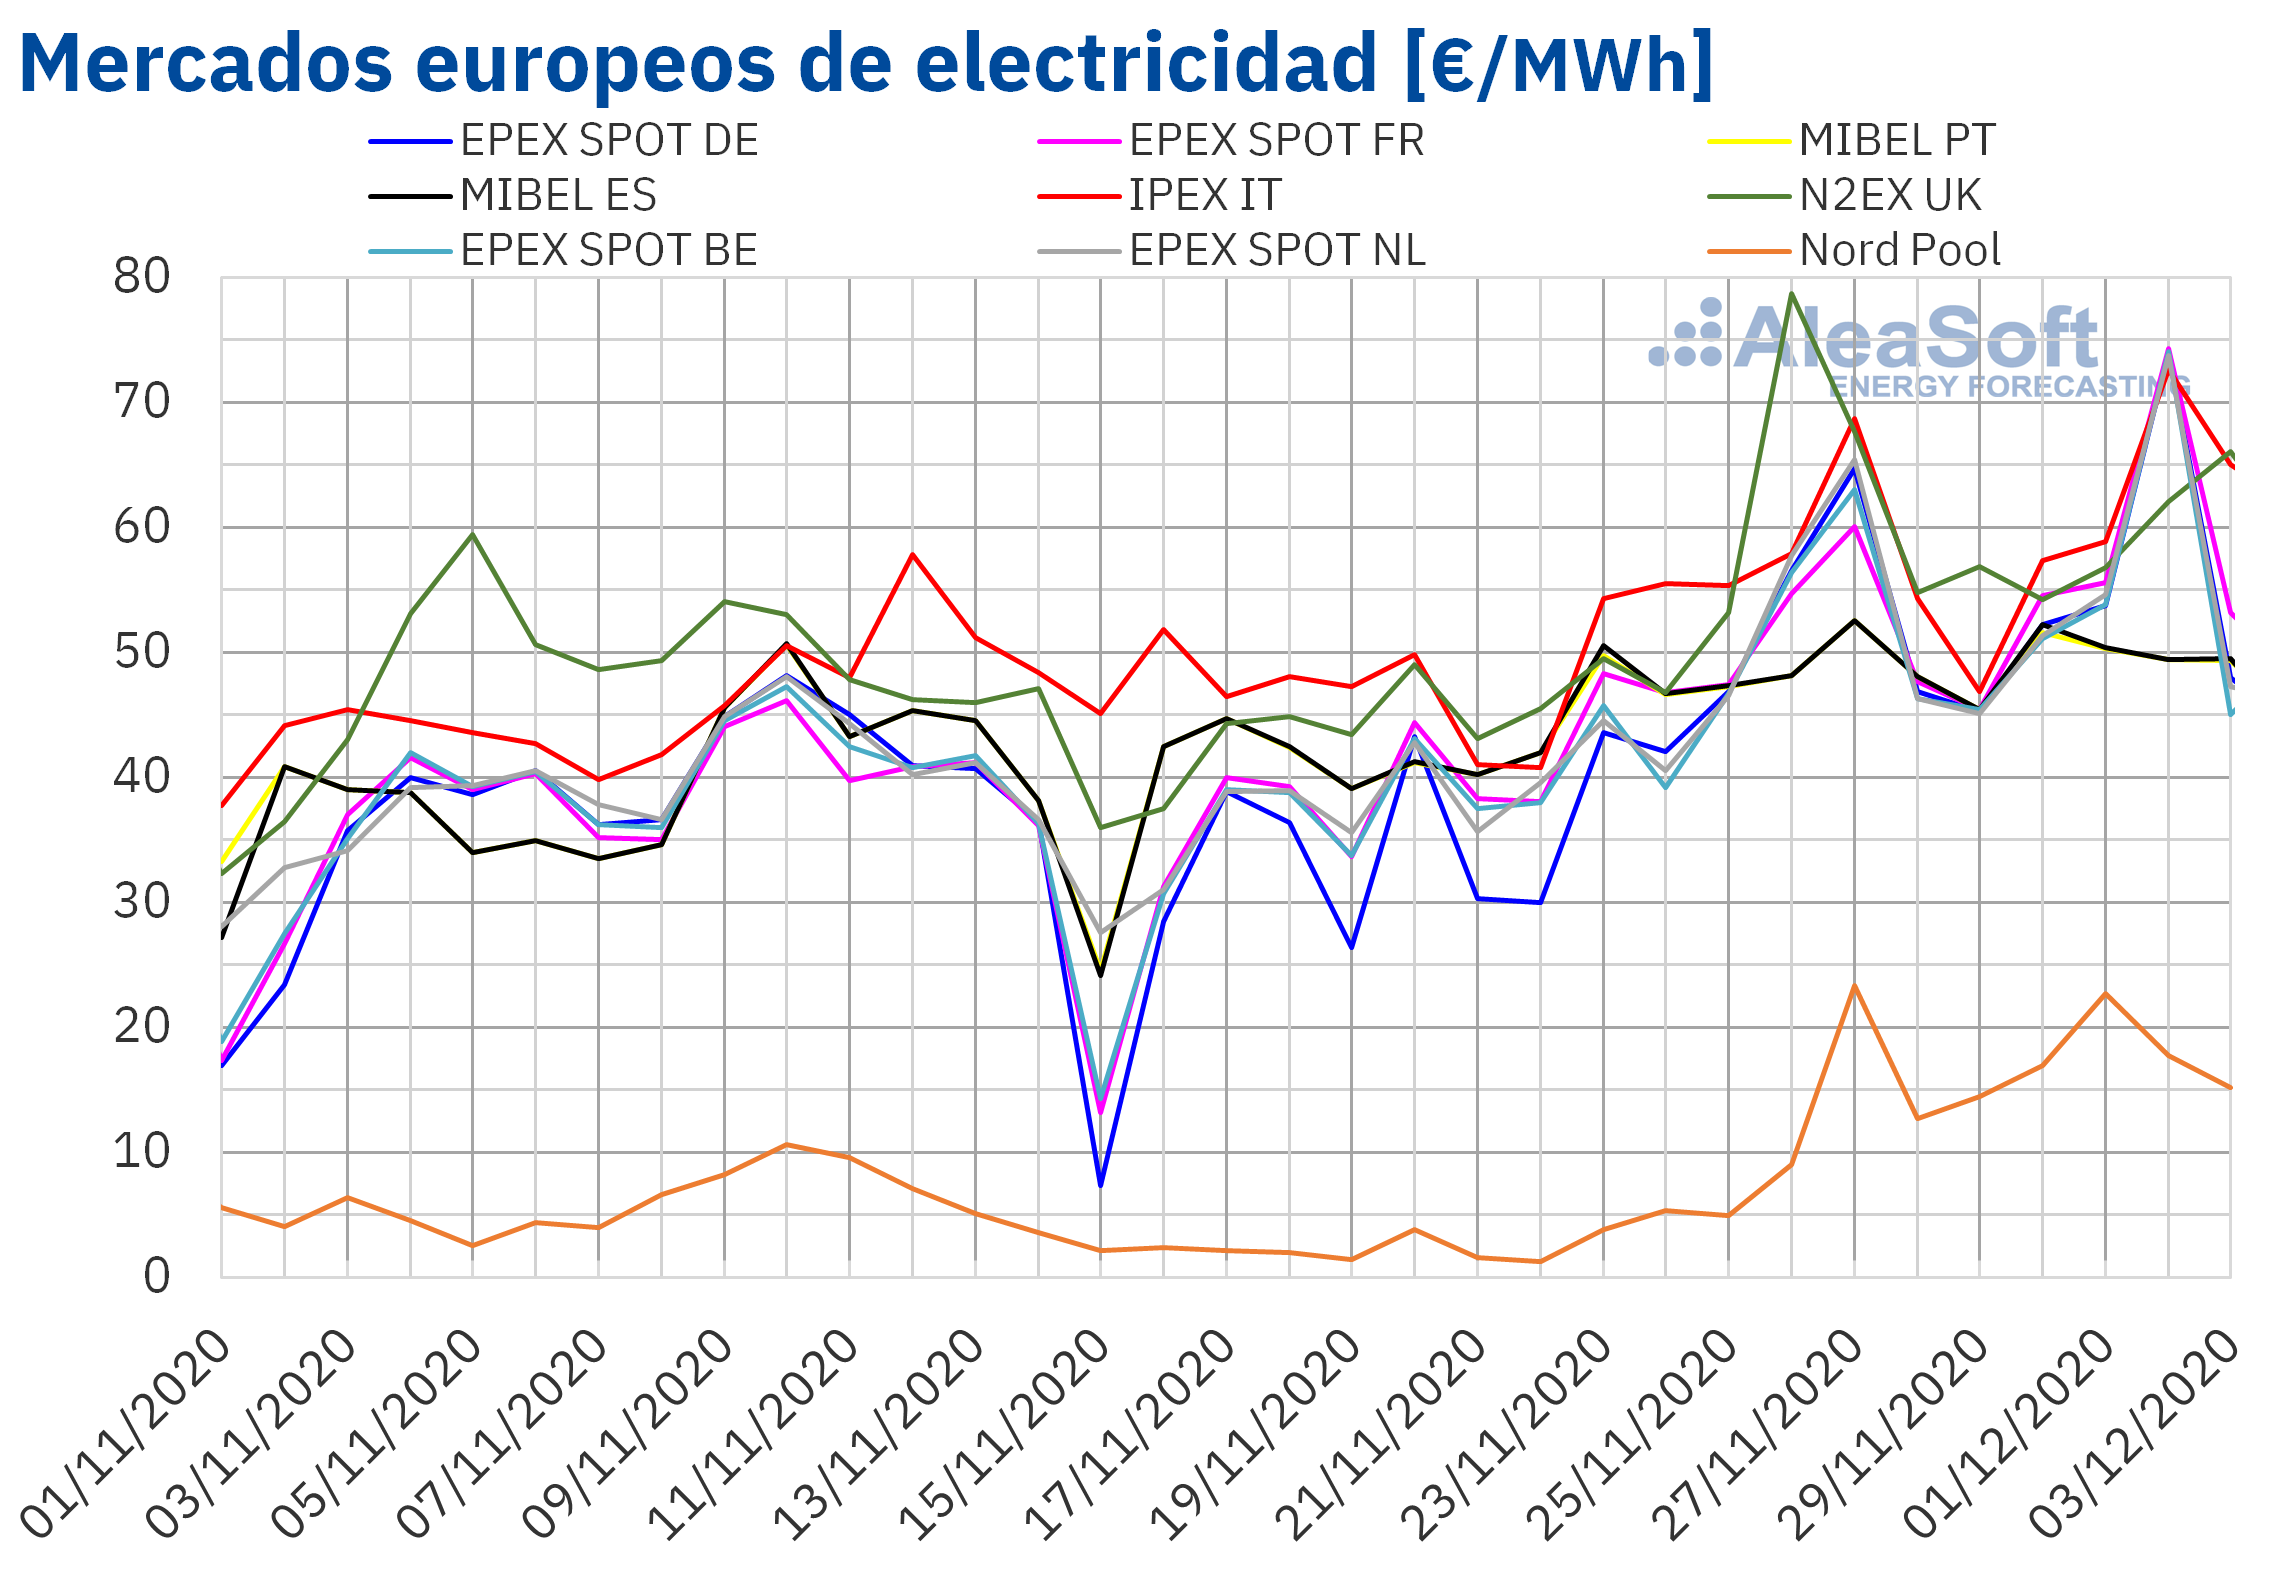 AleaSoft - Precios de mercados europeos de electricidad